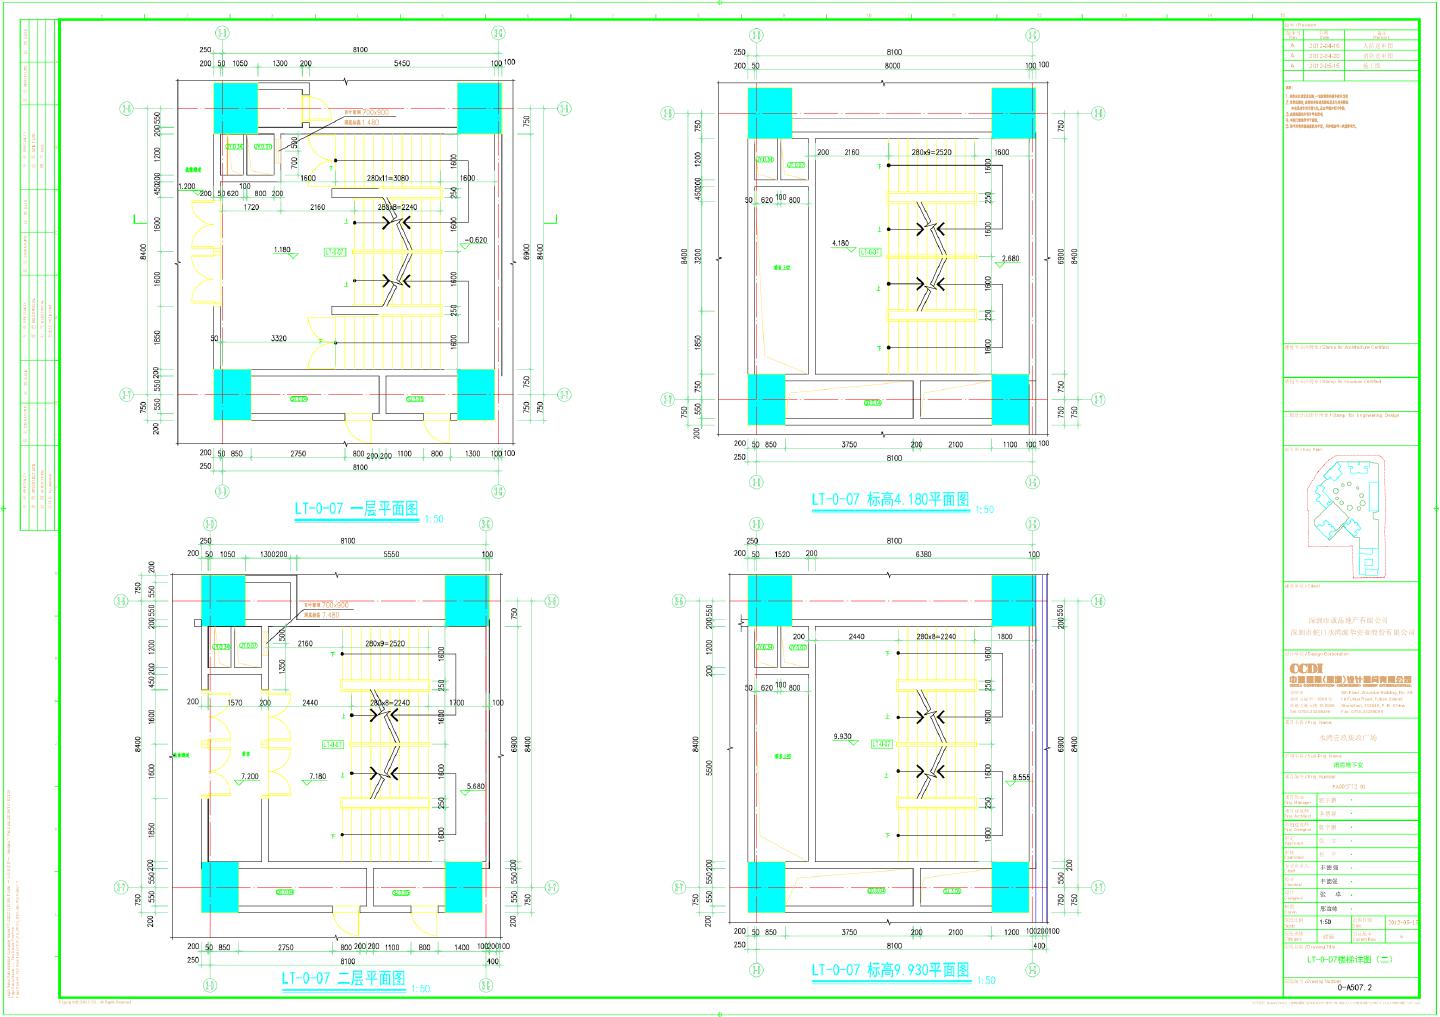 水湾壹玖柒玖广场裙房地下室-建施LT-0-07楼梯详图CAD图